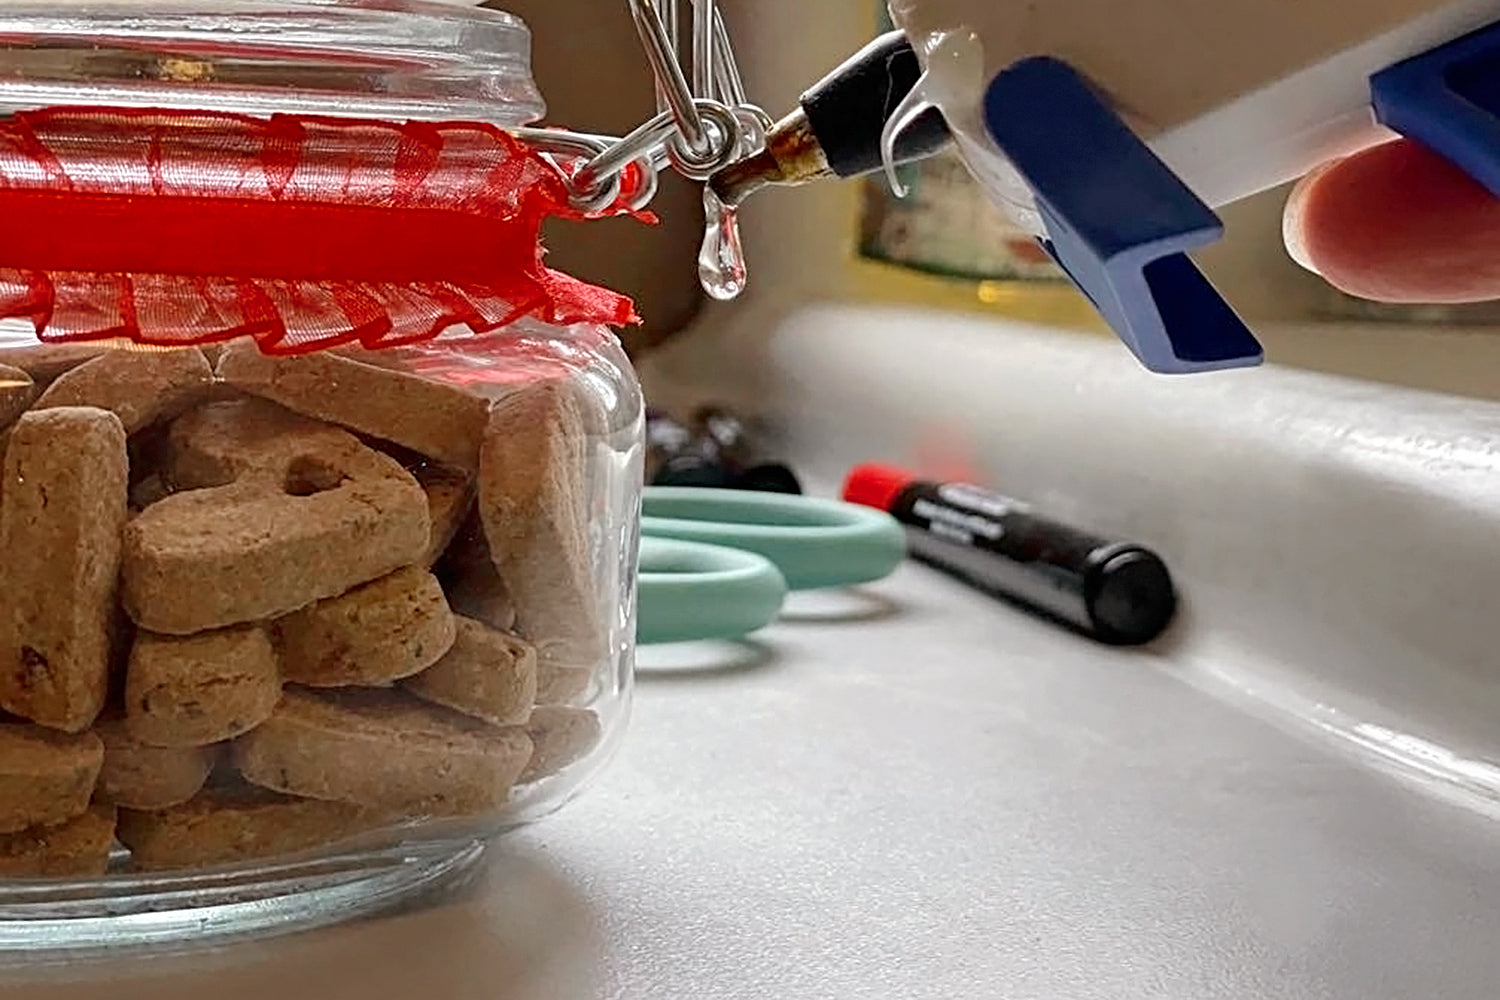 DIY dog treat jars - step 3 glue